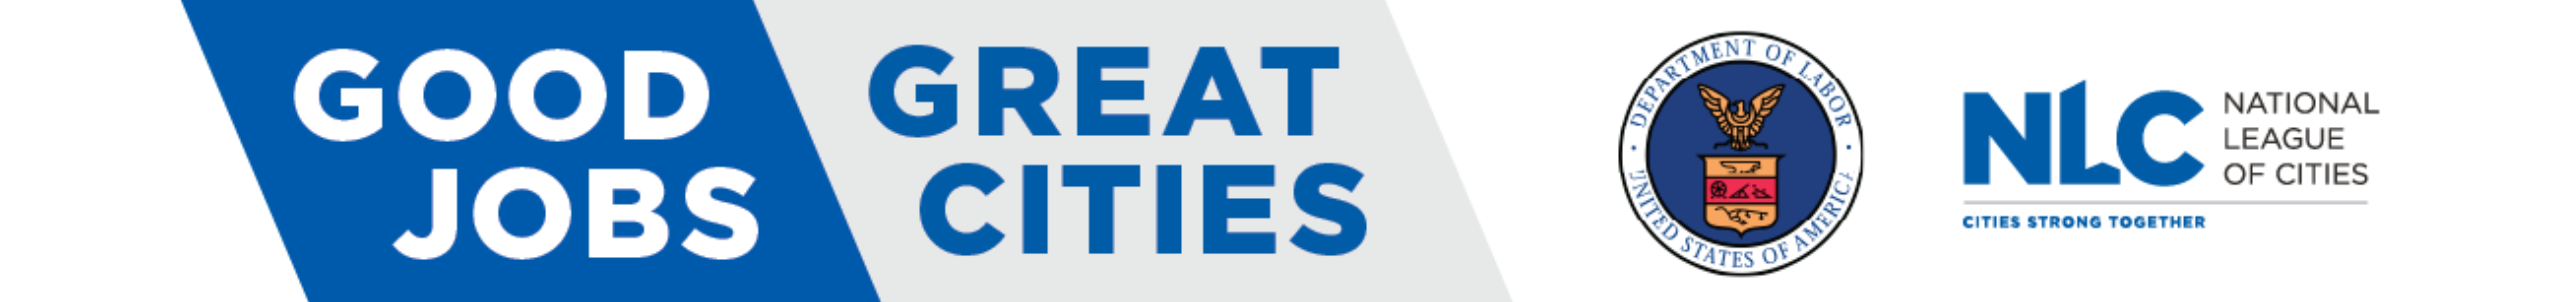 NLC Good Jobs, Great Cities